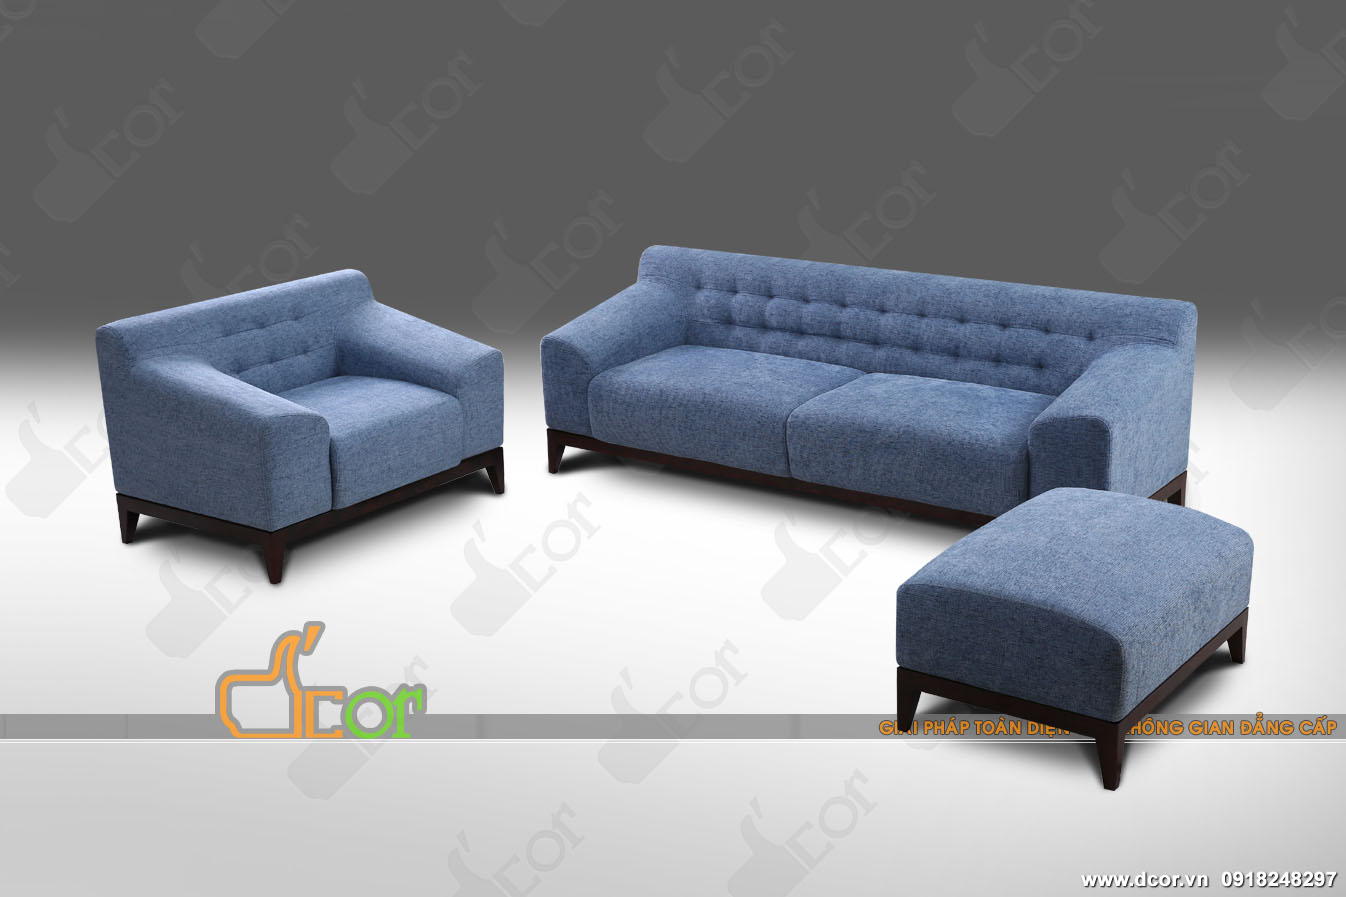 Mẫu sofa vải nỉ thiết kế cực kì đơn giản nhưng hứa hẹn bứt phá nhất cho không gian nội thất > sofa-vai-ni-nv312